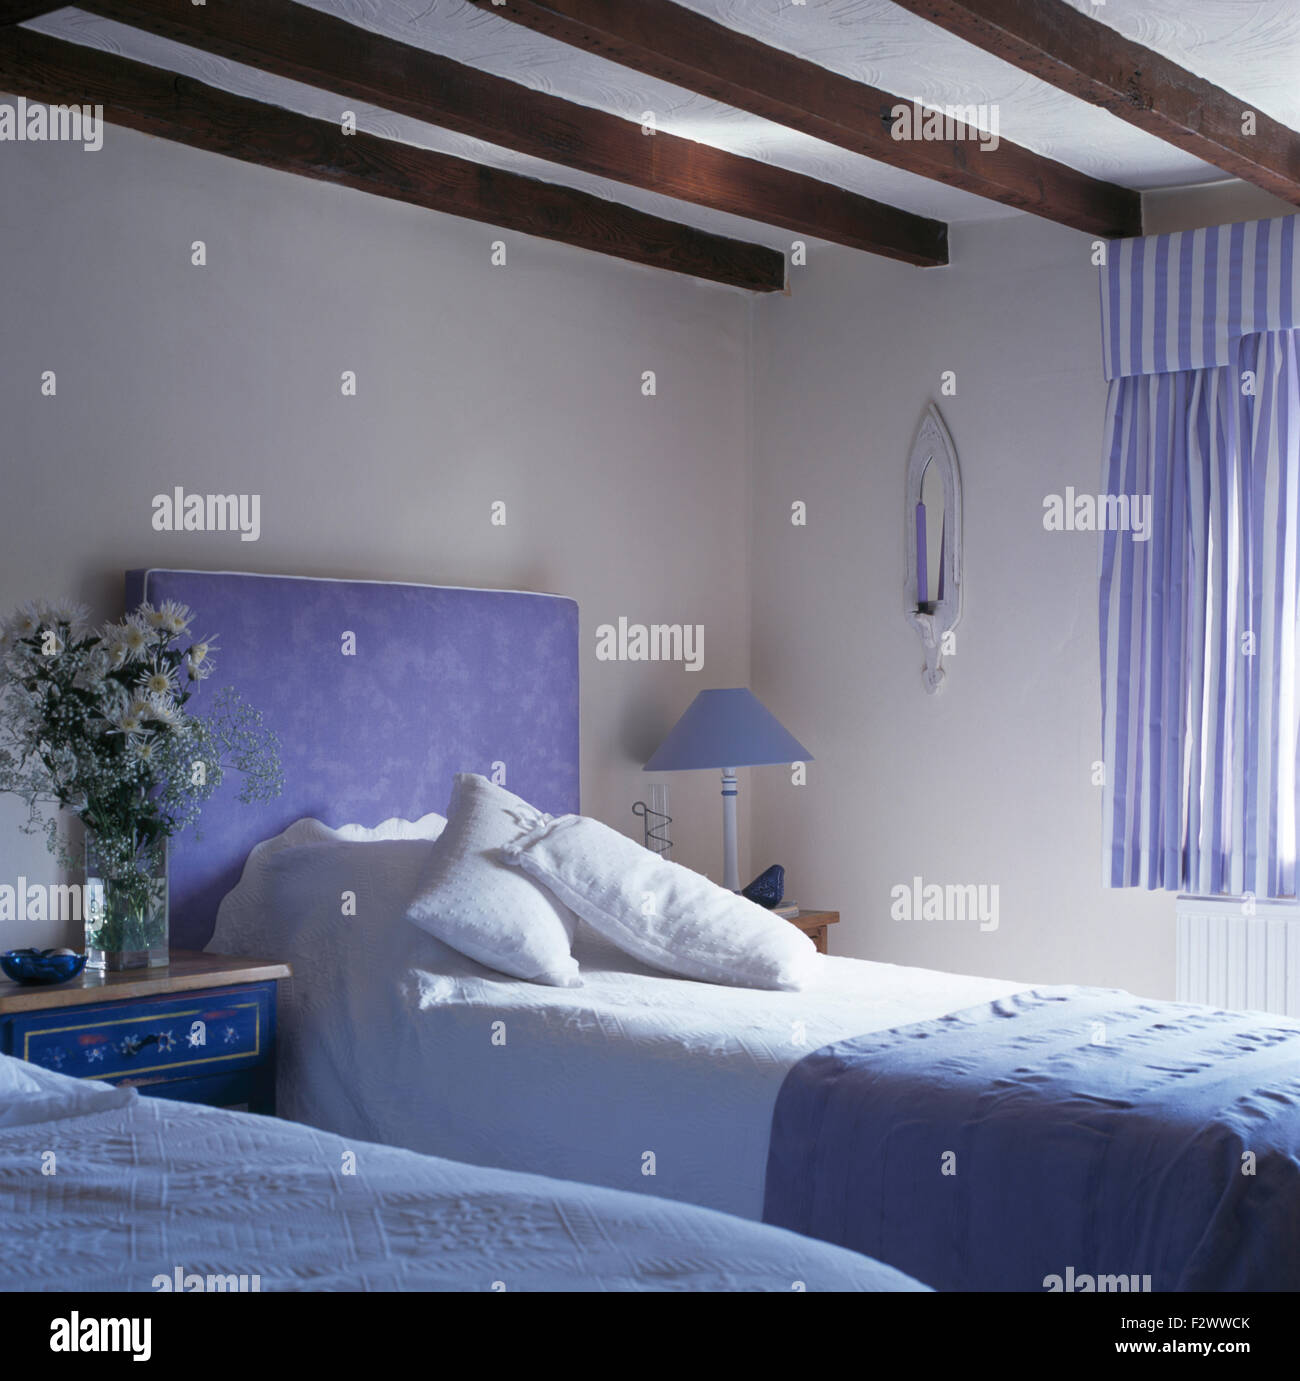 Tête de lit bleu rembourré sur lit avec draps blancs en pays chambre avec des rideaux à rayures blanc +bleu Banque D'Images